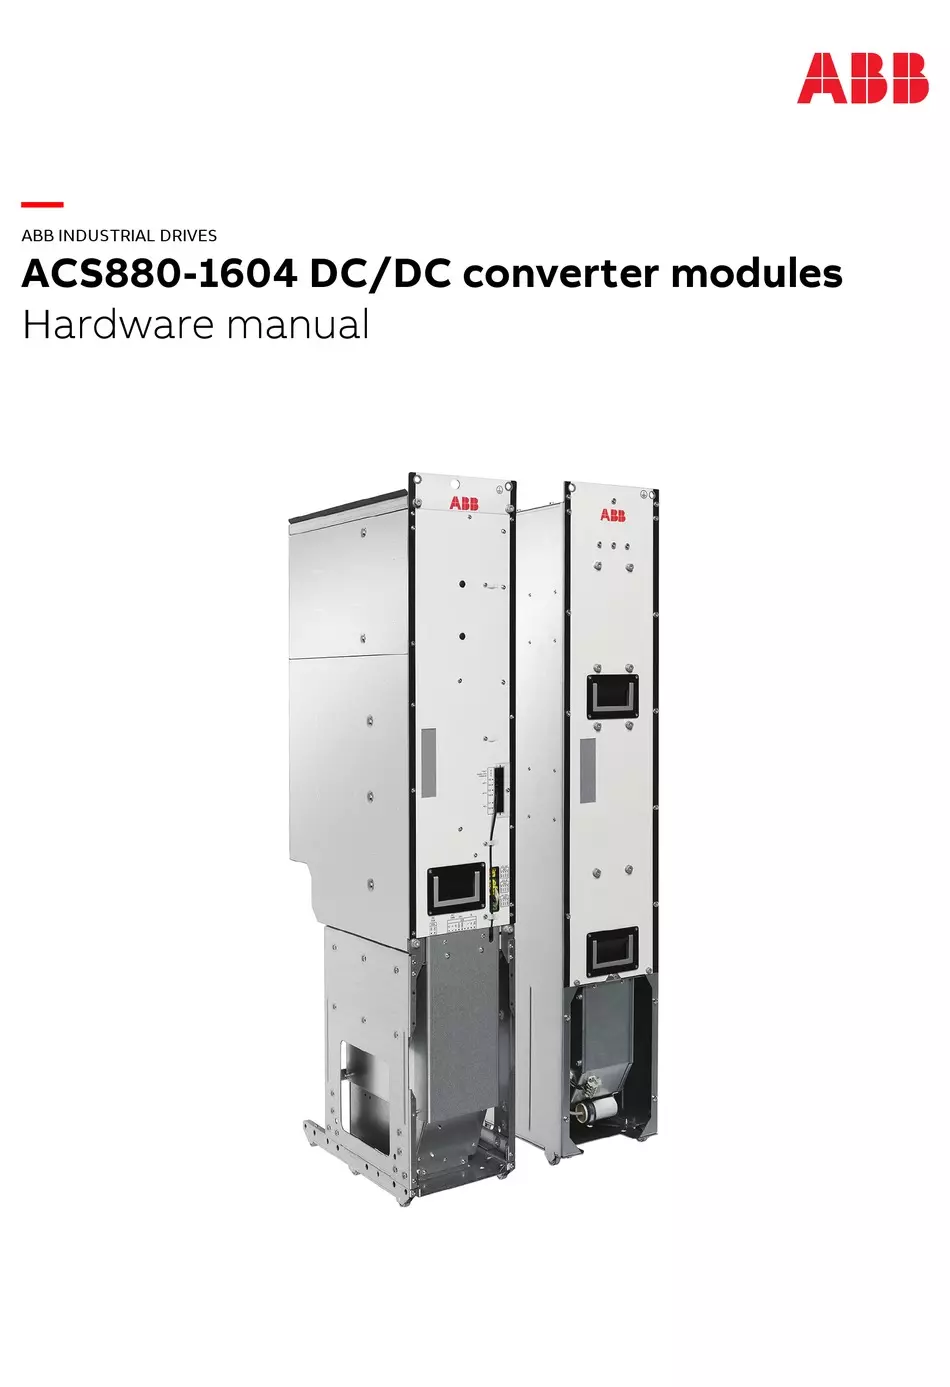 ABB ACS880 Industrial Drives ACS880-1604LC